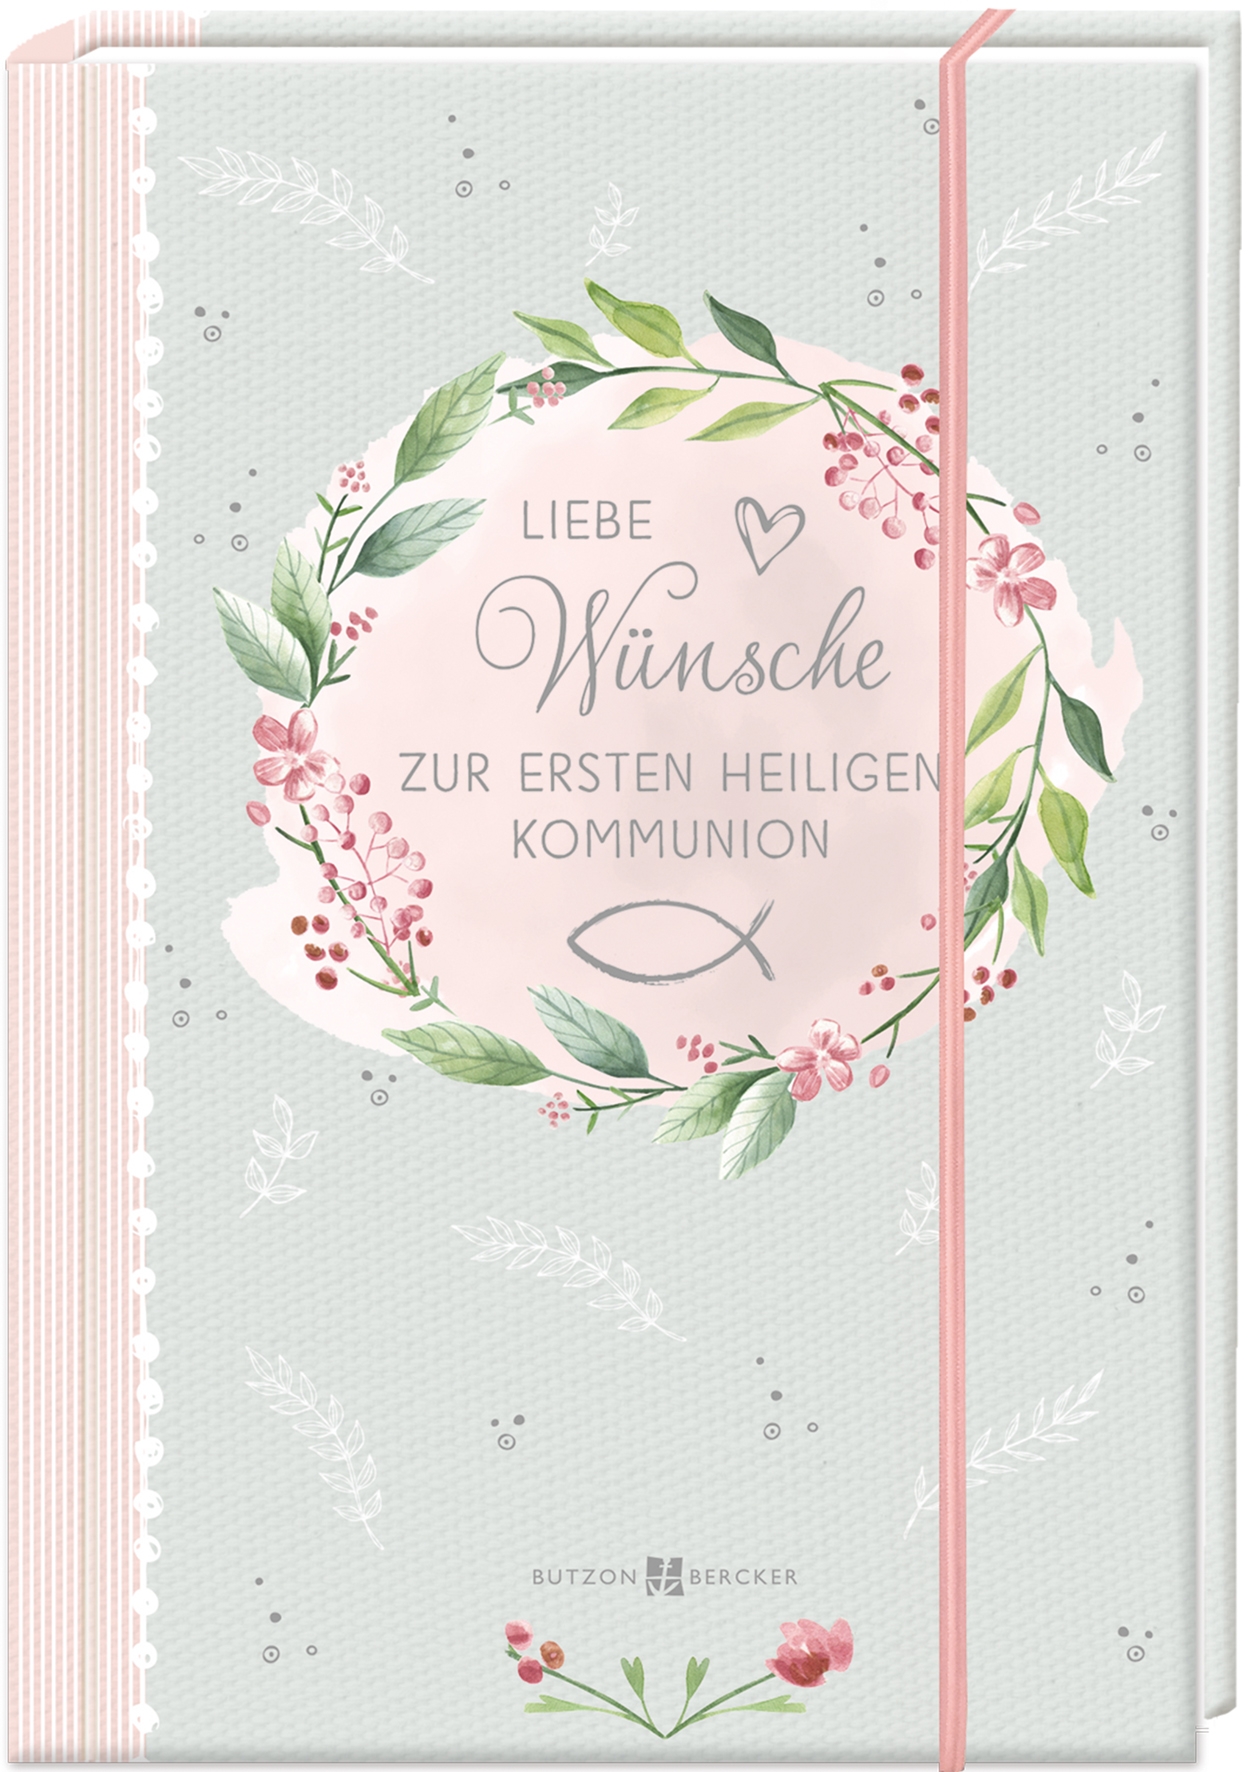 Geschenkbuch zur Kommunion - Liebe Wünsche & Geldgeschenk